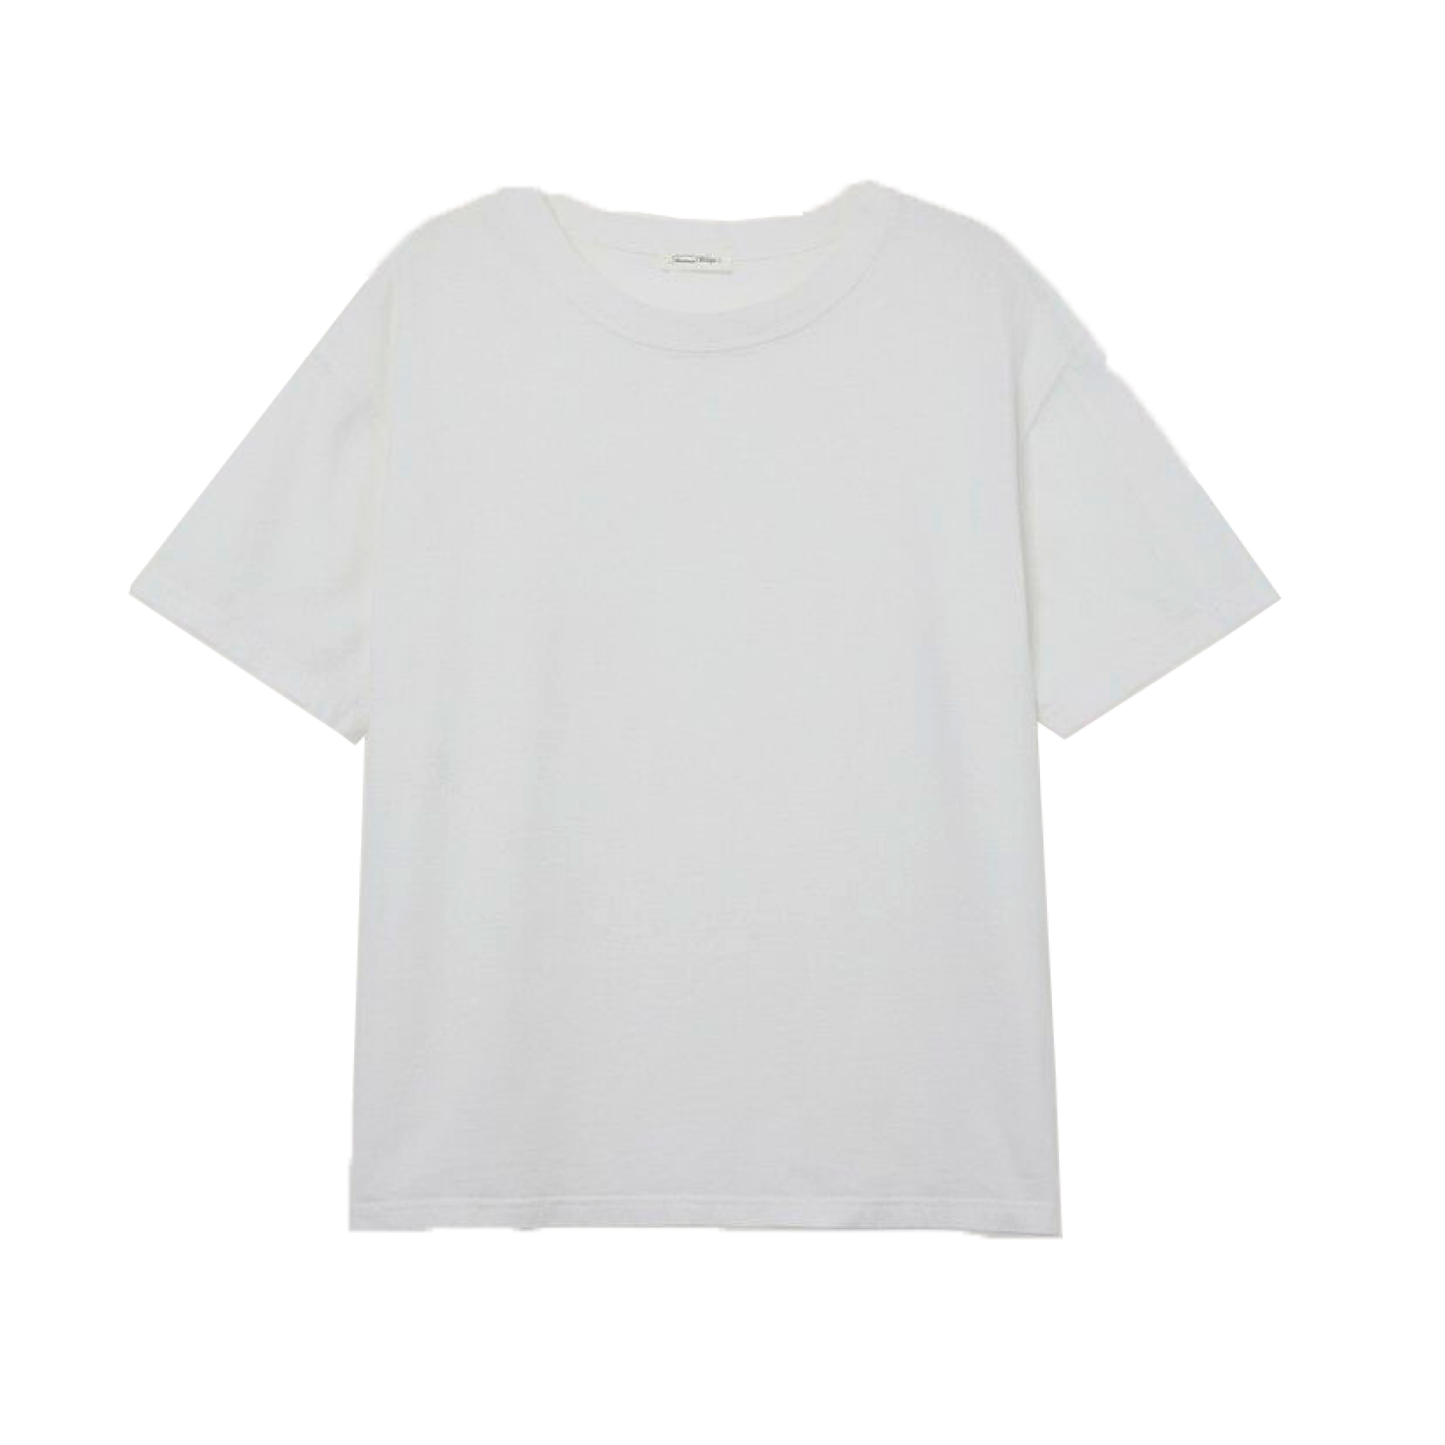 Fizvalley T-Shirt, Hvid